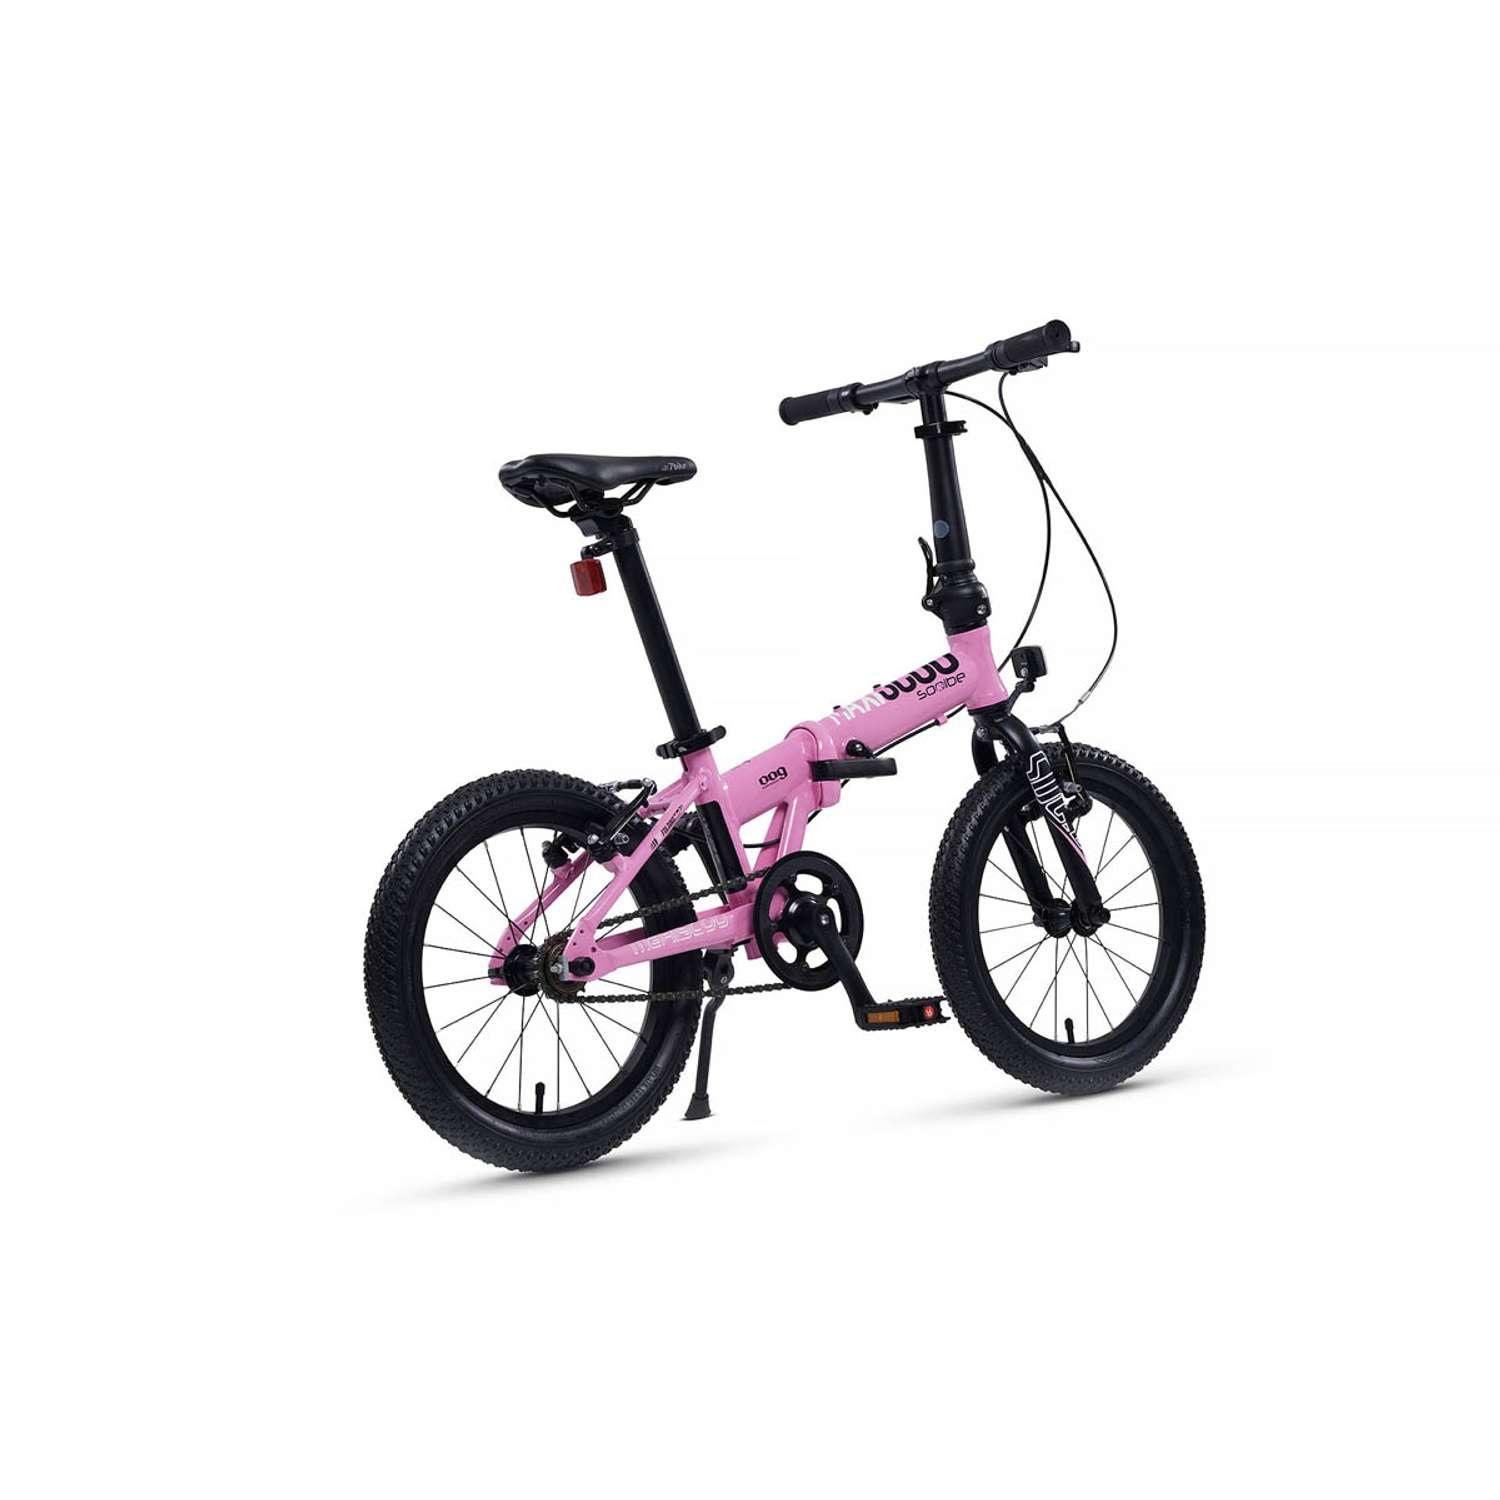 Велосипед Детский Складной Maxiscoo S009 16 розовый - фото 4